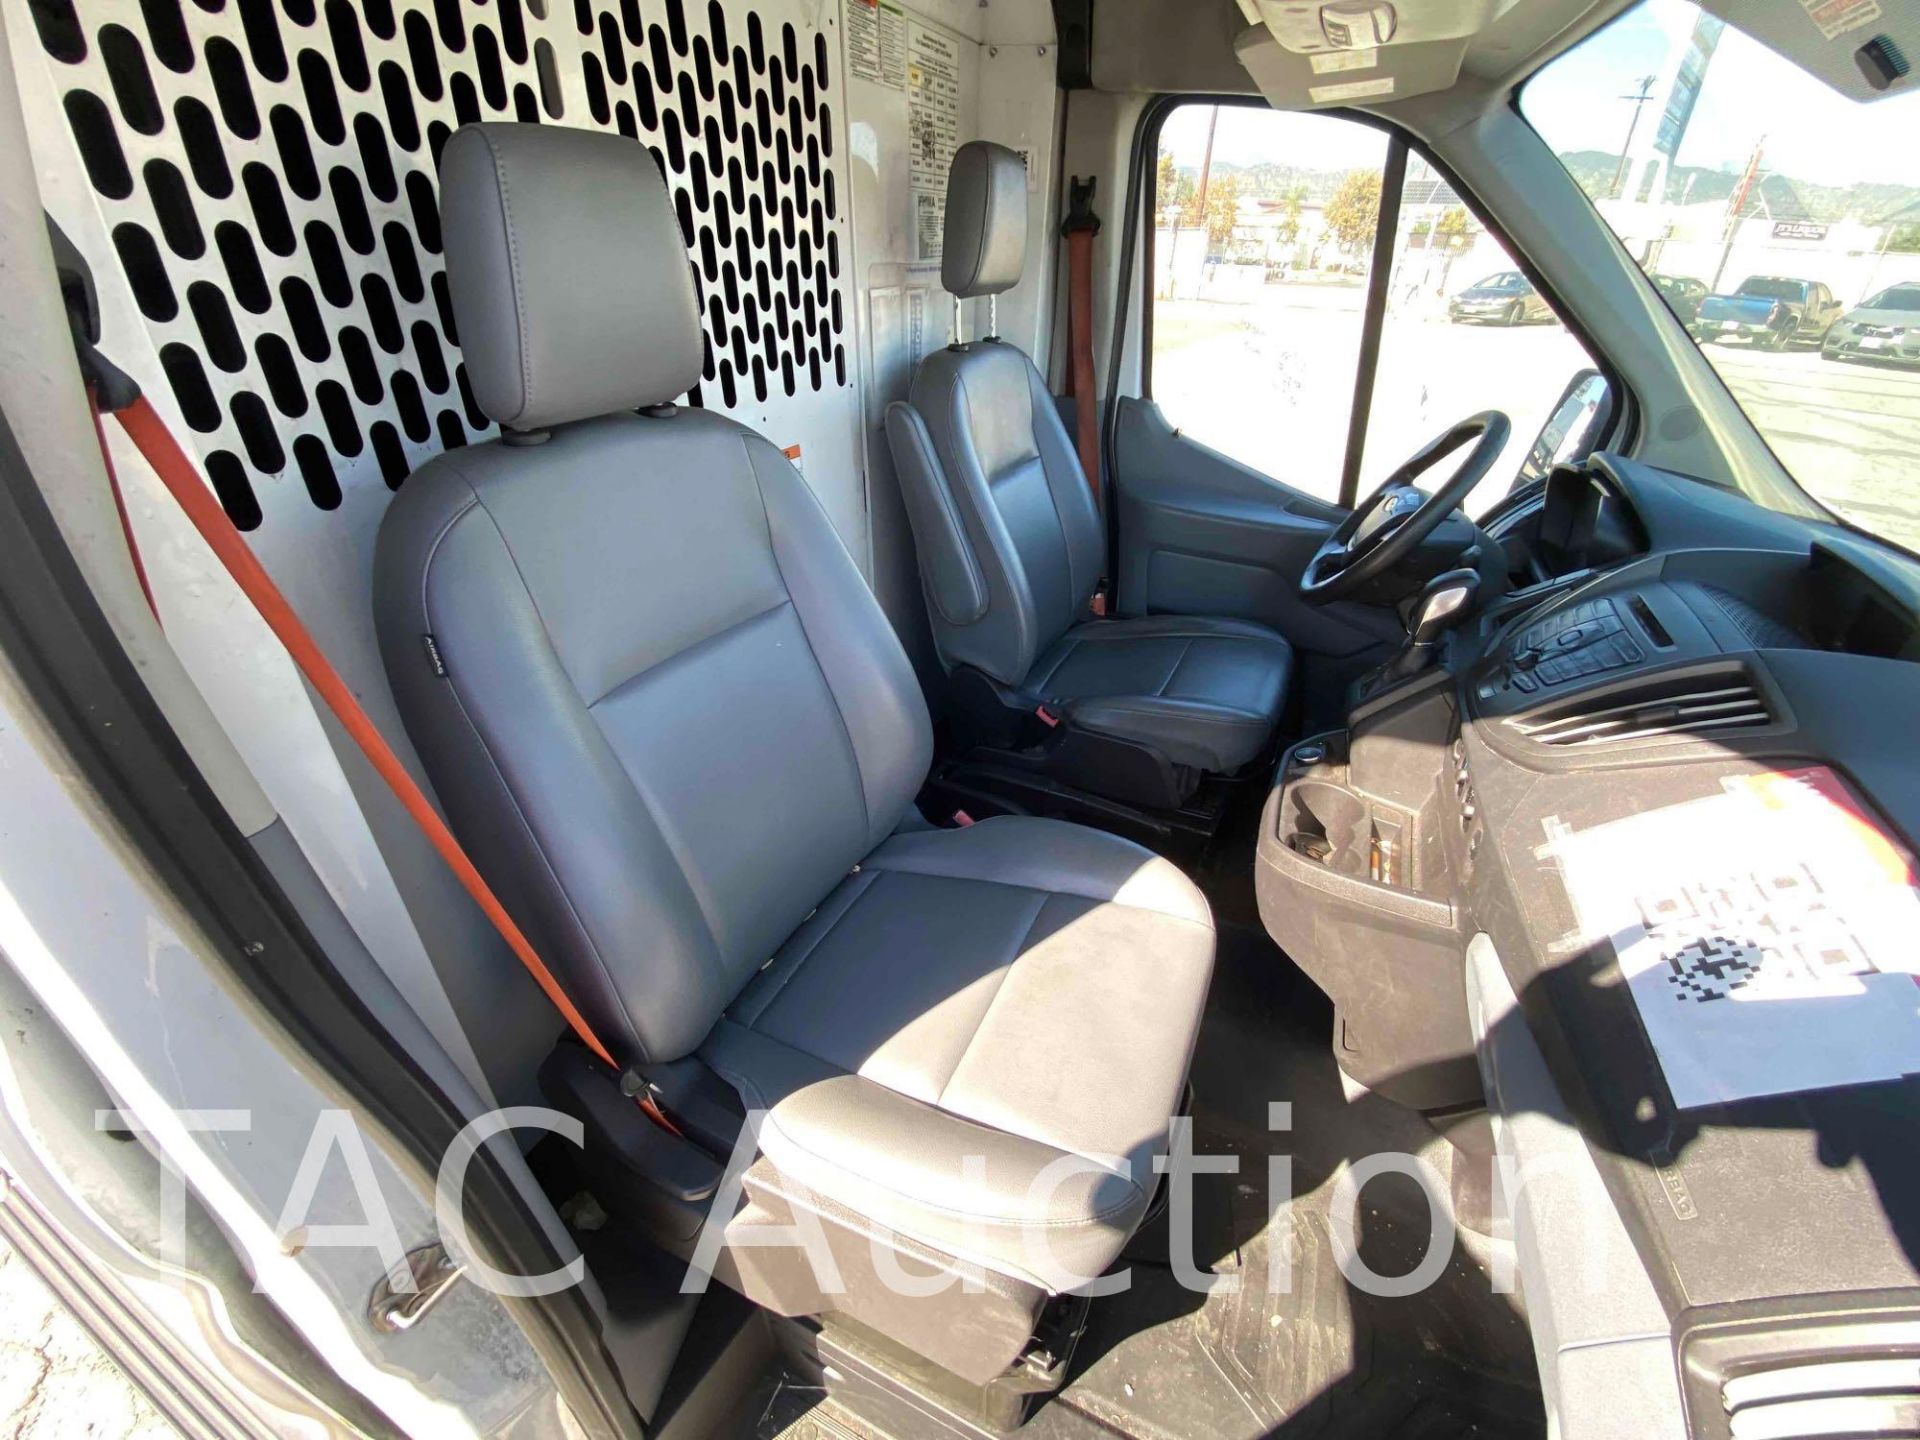 2019 Ford Transit 150 Cargo Van - Image 21 of 39